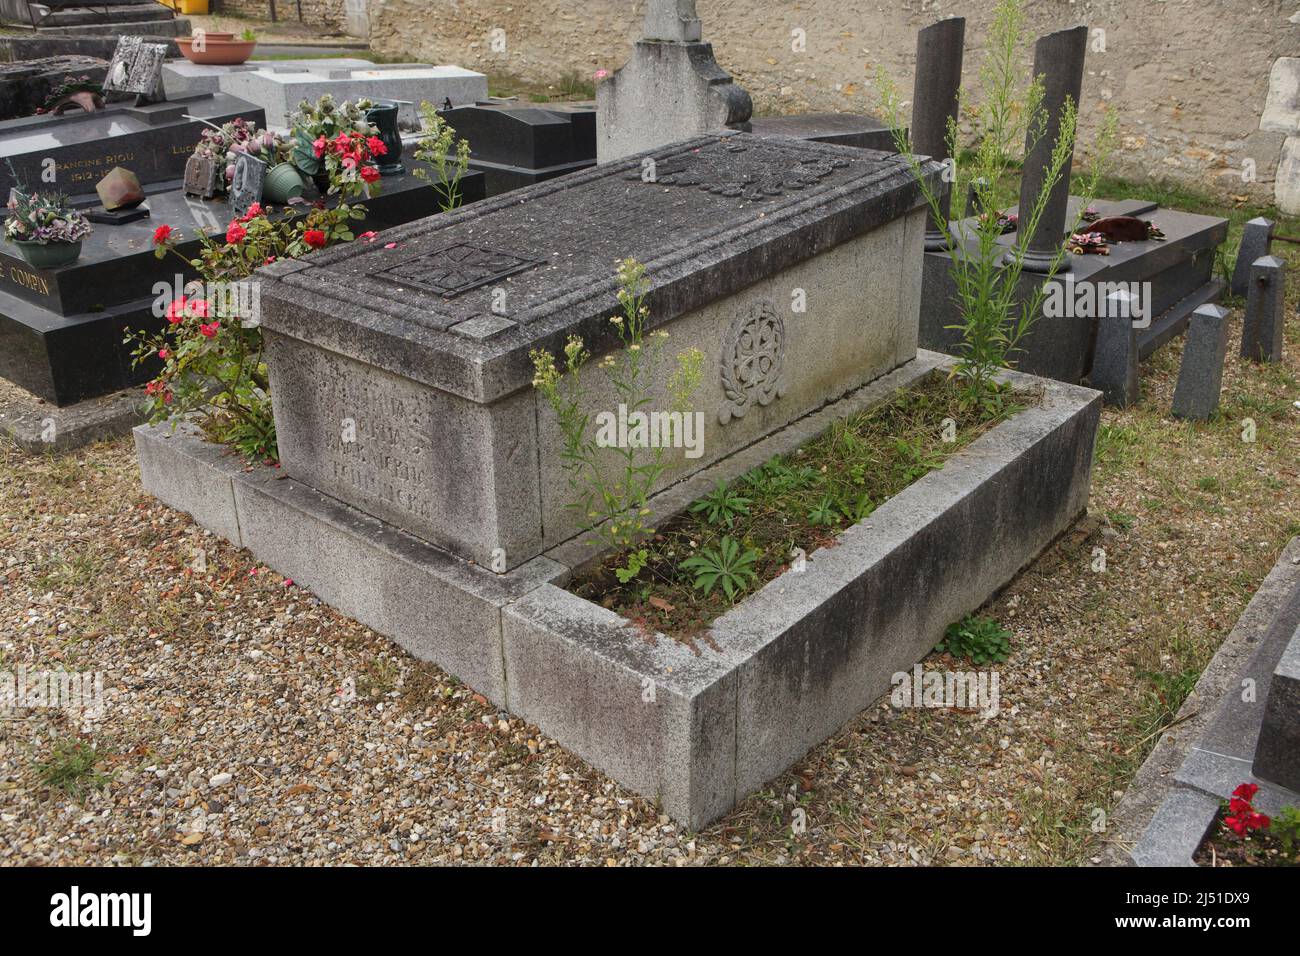 Tombe de la princesse Maria Tenisheva, artiste et philanthrope russe (1858-1928) au cimetière local de la celle-Saint-Cloud à Paris, France. La pierre tombale a été conçue par l'artiste russe Ivan Bilibin. Banque D'Images